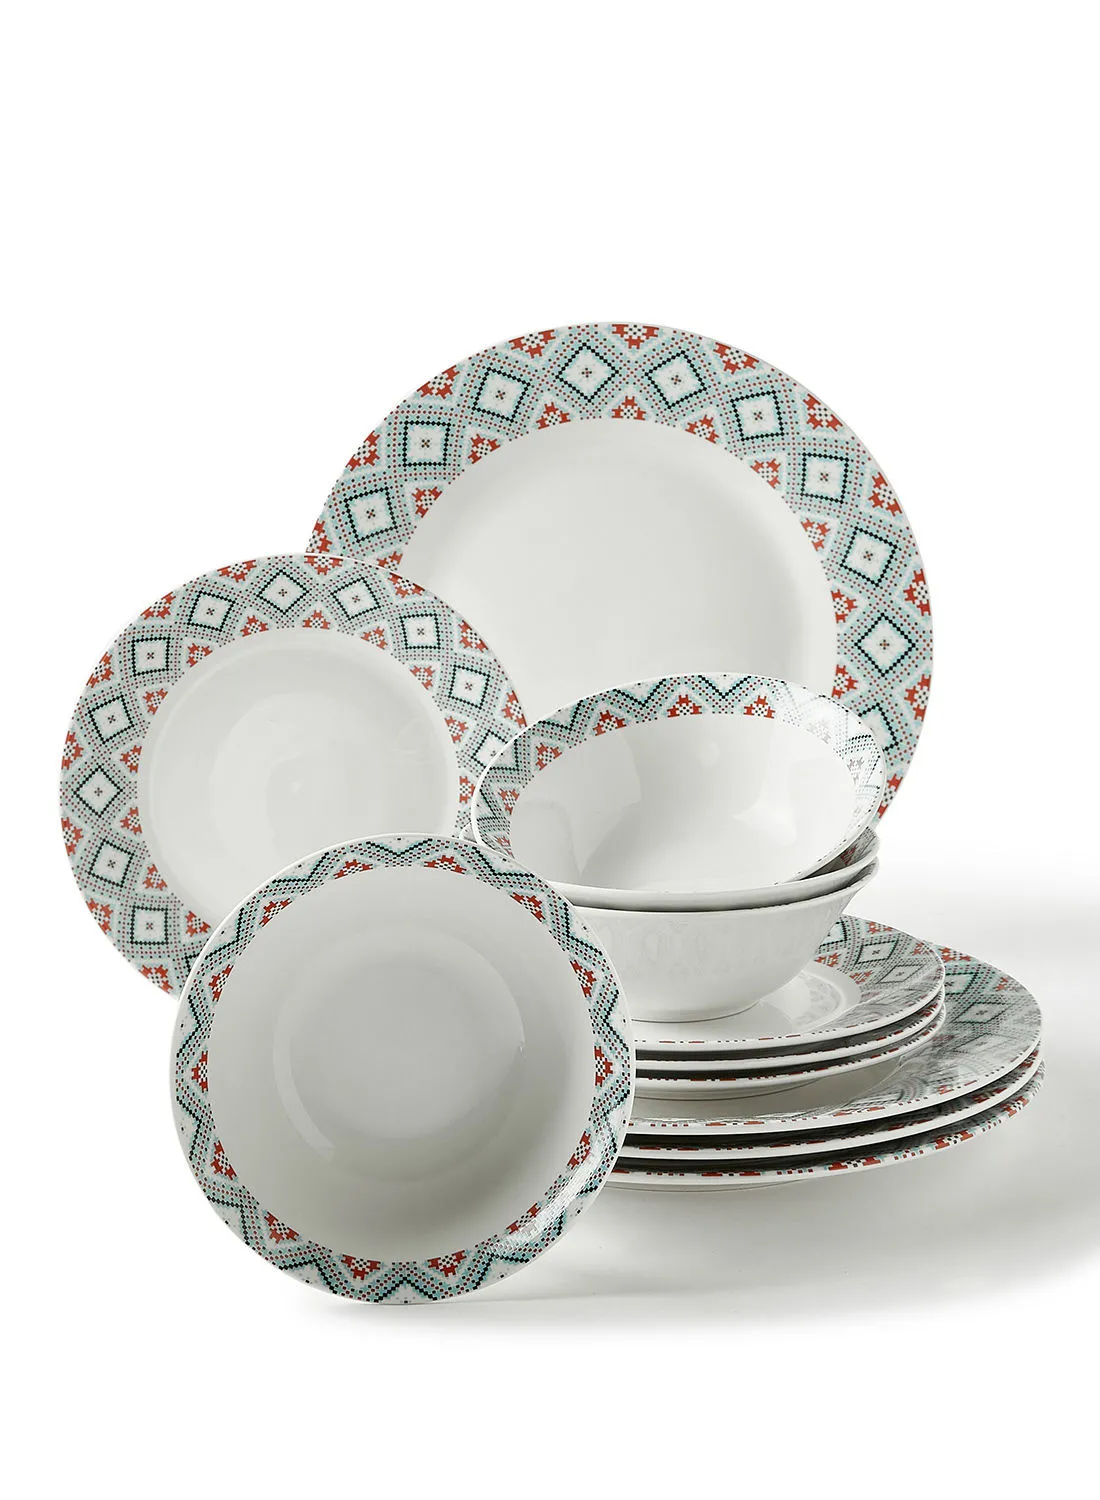 noon east 12 Piece Porcelain Dinner Set - Dishes, Plates - Dinner Plate, Side Plate, Bowl - Serves 4 - Printed Design Pixel